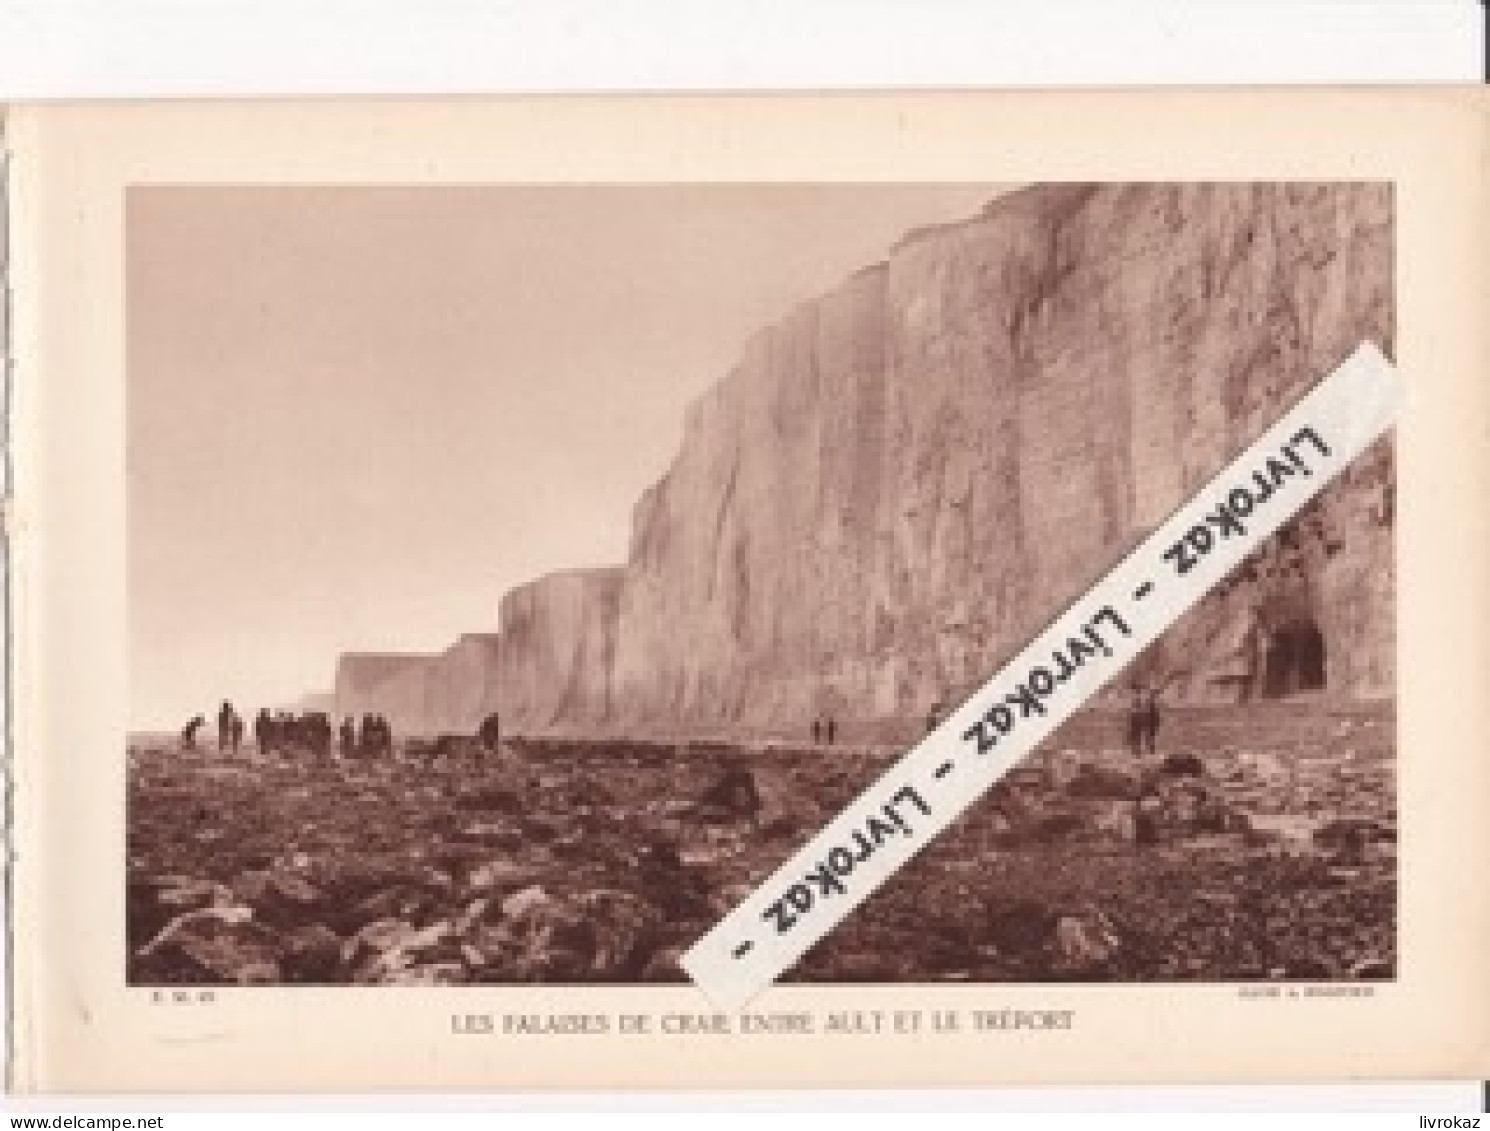 Falaises De Craie Entre Ault Et Le Tréport (Somme), Photo Sépia Extraite D'un Livre Paru En 1933 - Non Classificati